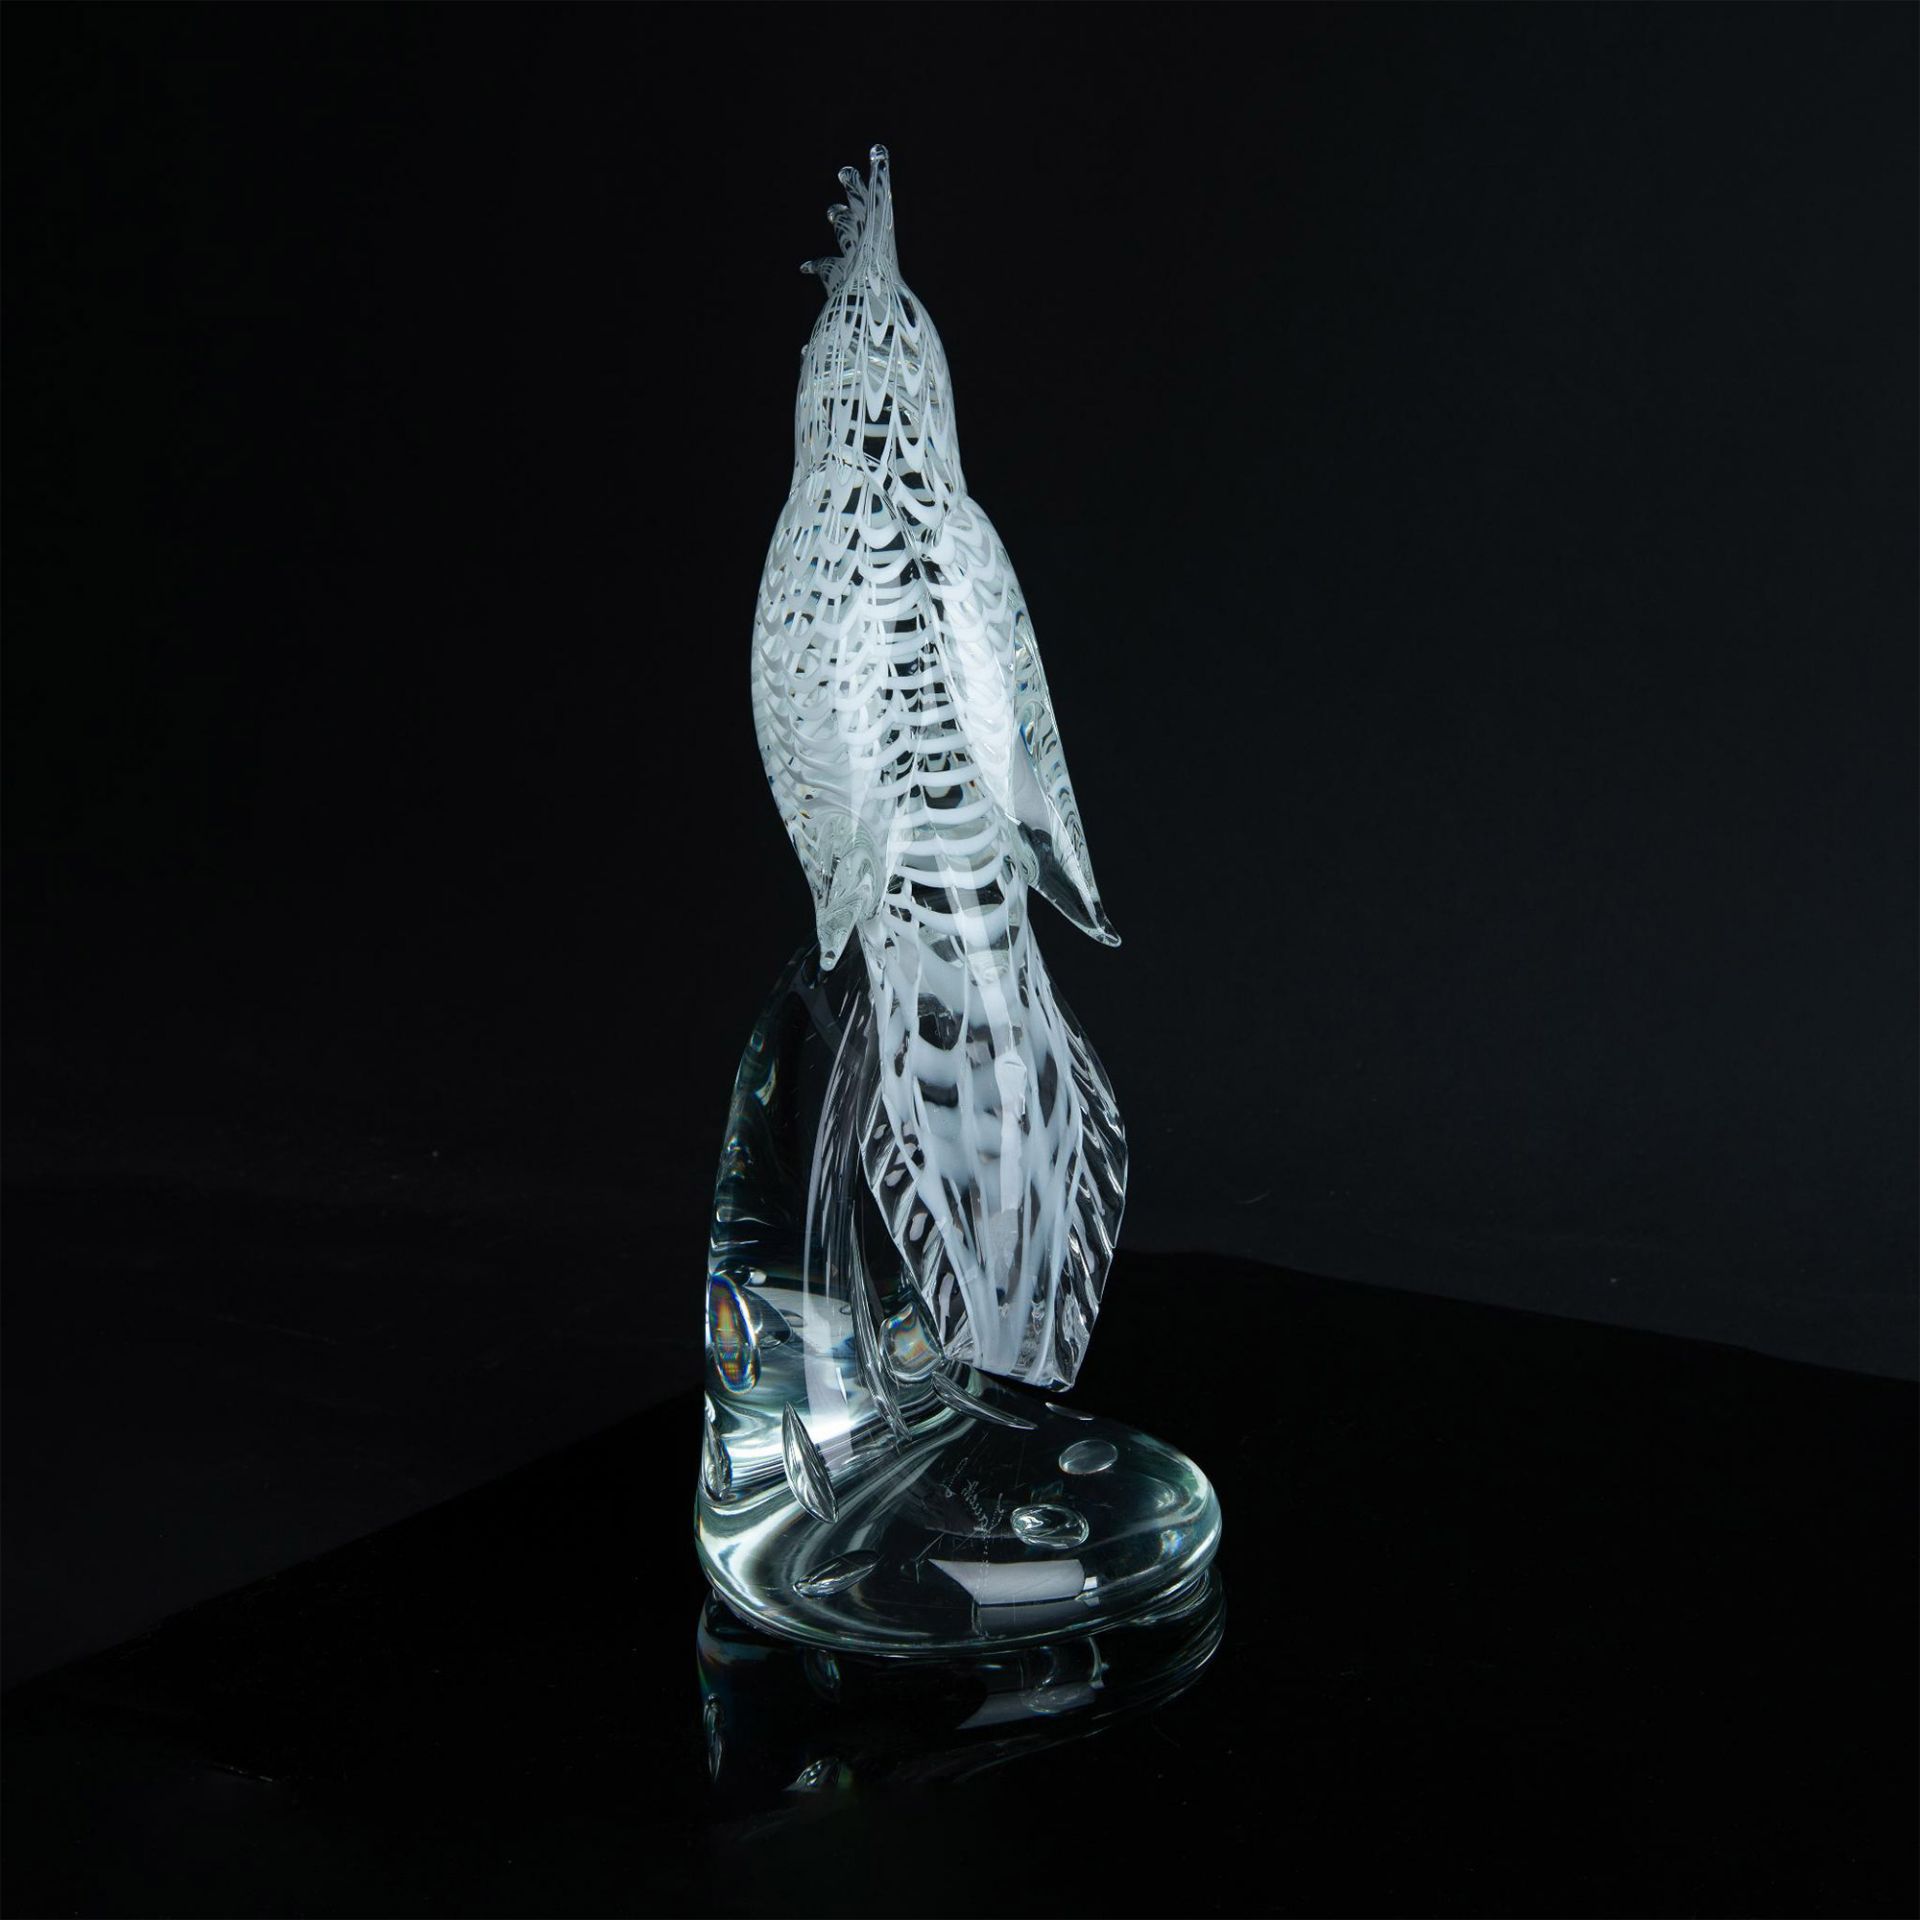 Murano Licio Zanetti Cockatoo Art Glass Sculpture, Signed - Image 5 of 6